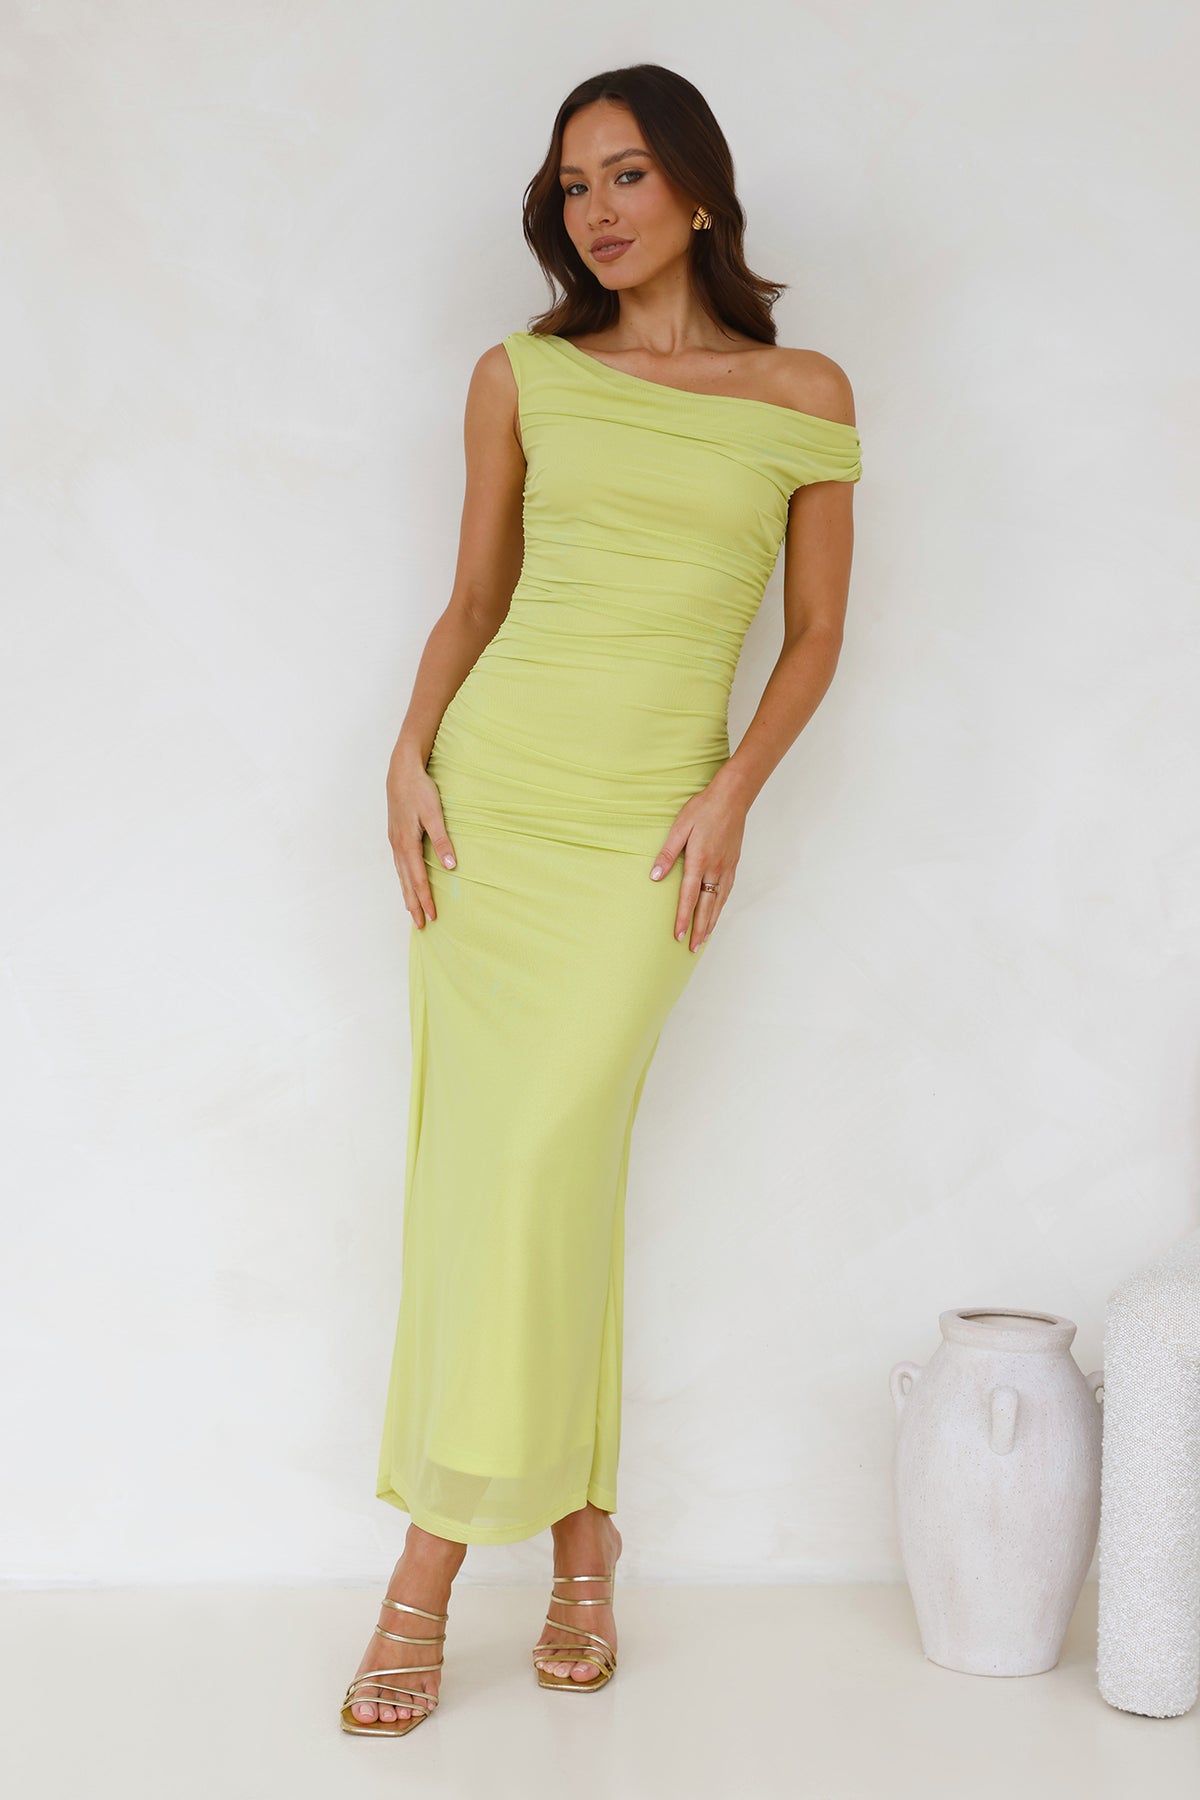 Shop Formal Dress - Old Love Off Shoulder Maxi Dress Lime featured image